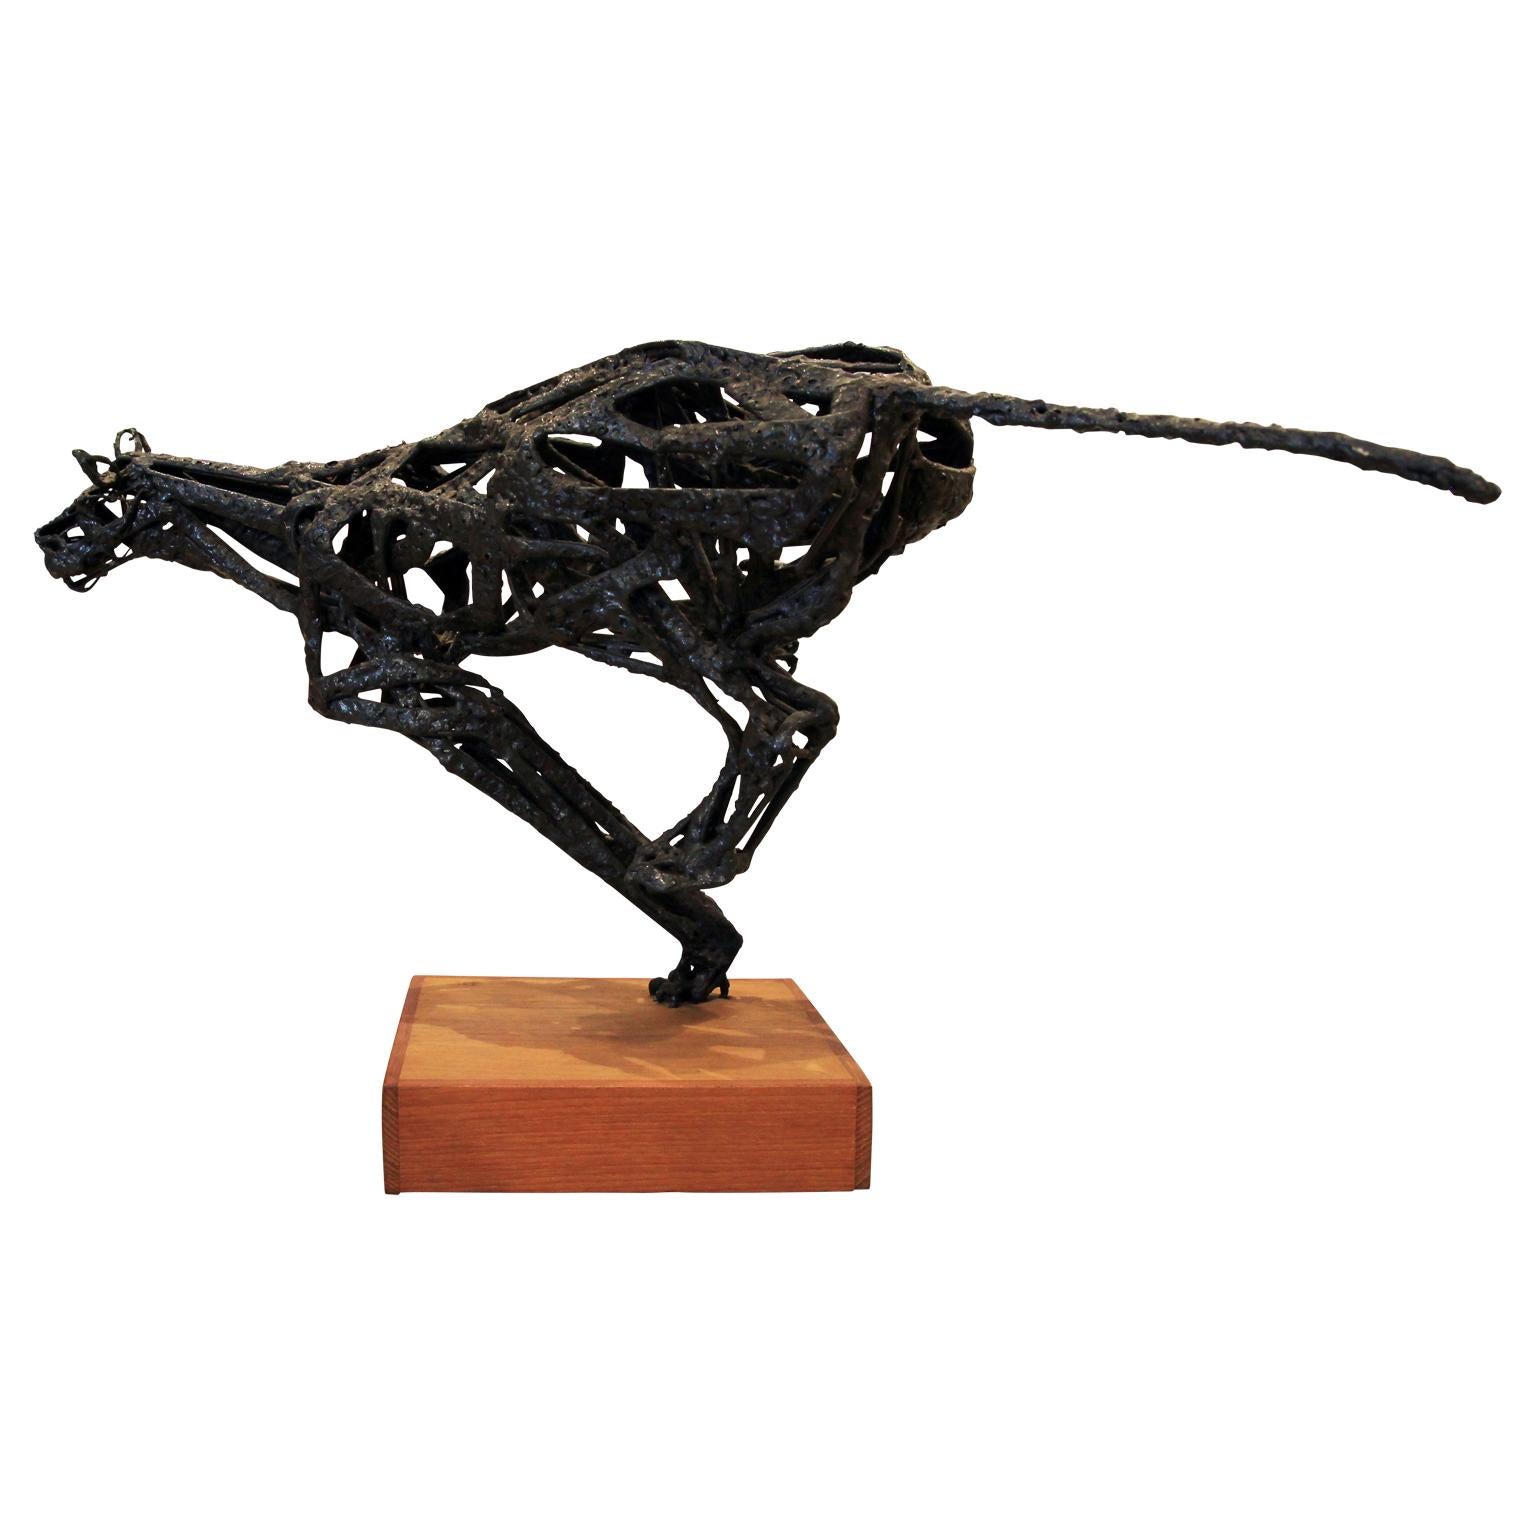 Bob Fowler Figurative Sculpture - Modern Brutalist Metal Abstract Running Jaguar Sculpture on a Wooden Base